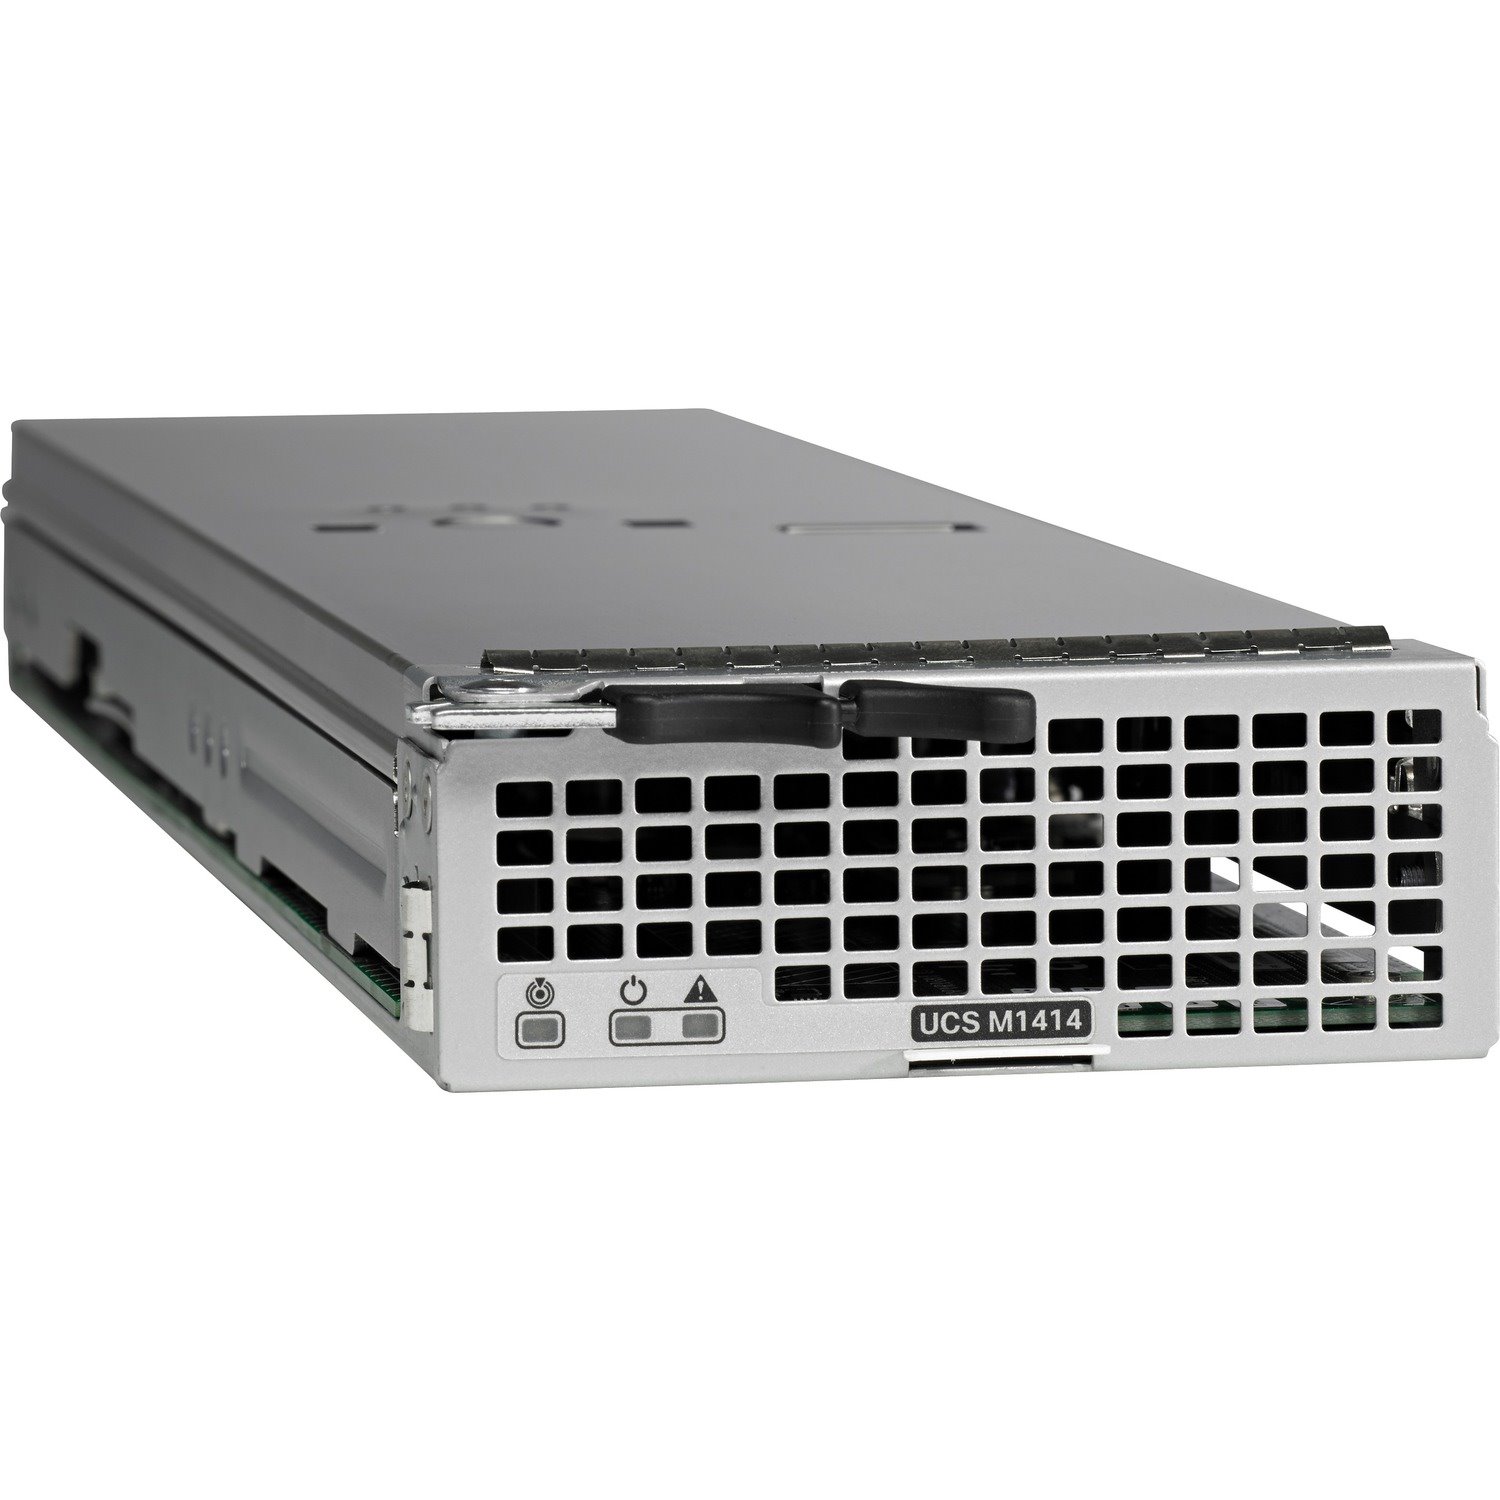 Cisco M1414 Server - 1 x Intel Xeon E3-1285 v4 3.50 GHz - 32 GB RAM - Serial ATA, Serial Attached SCSI (SAS) Controller